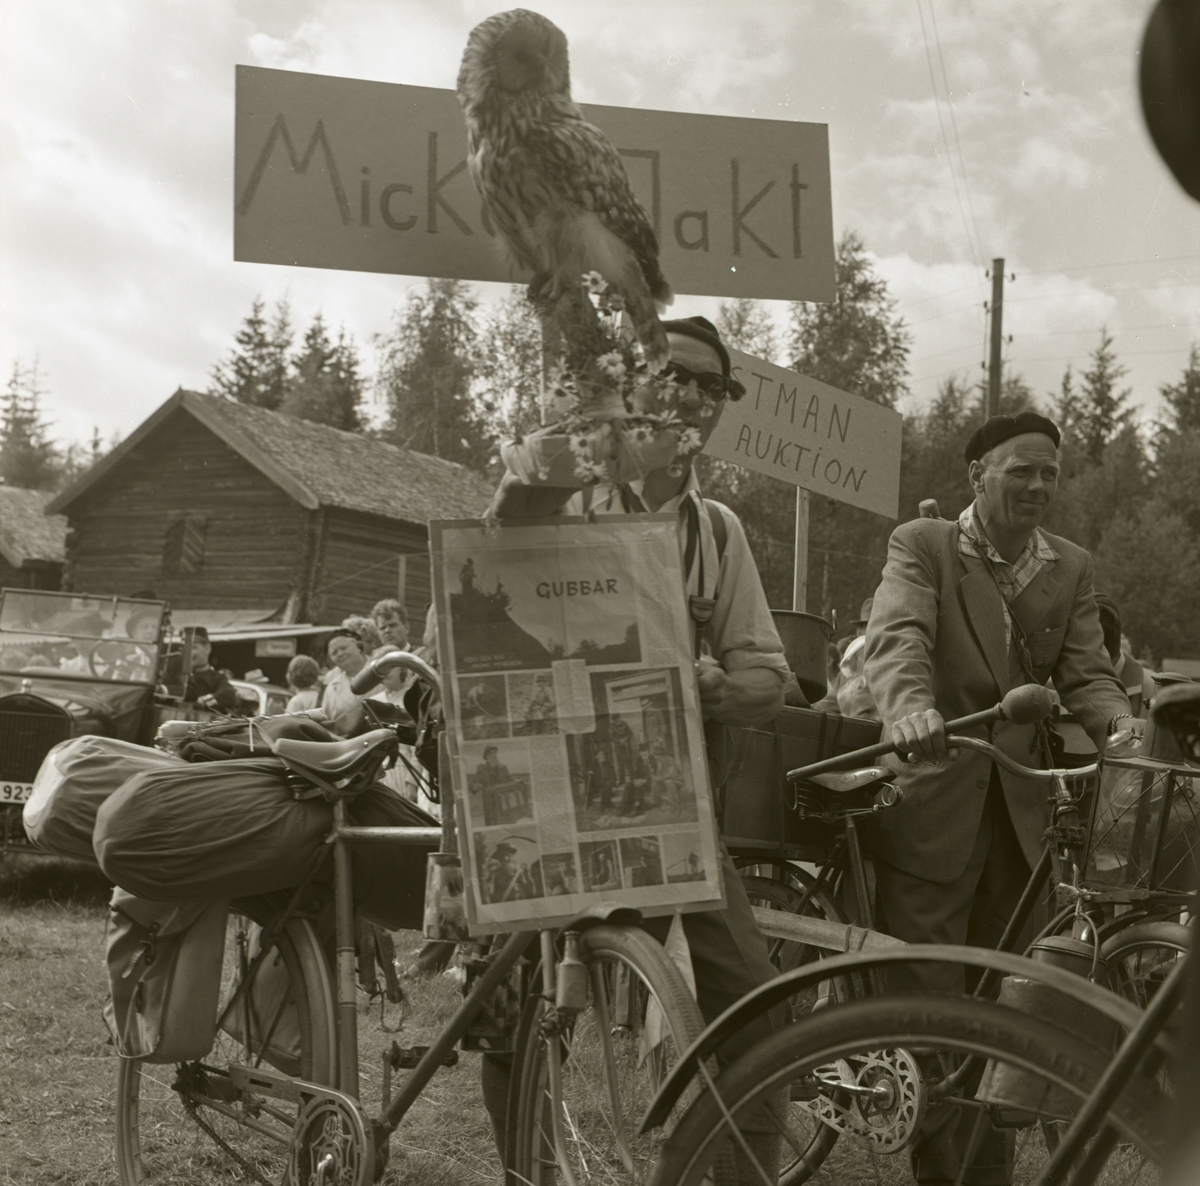 Karneval under en hembygdsfest där två män leder varsin cykel med packning på pakethållaren samt har varsin banderoll med text och bild på. Publiken tittar nyfiket på ekipaget, 22 juni 1962 i Rengsjö.